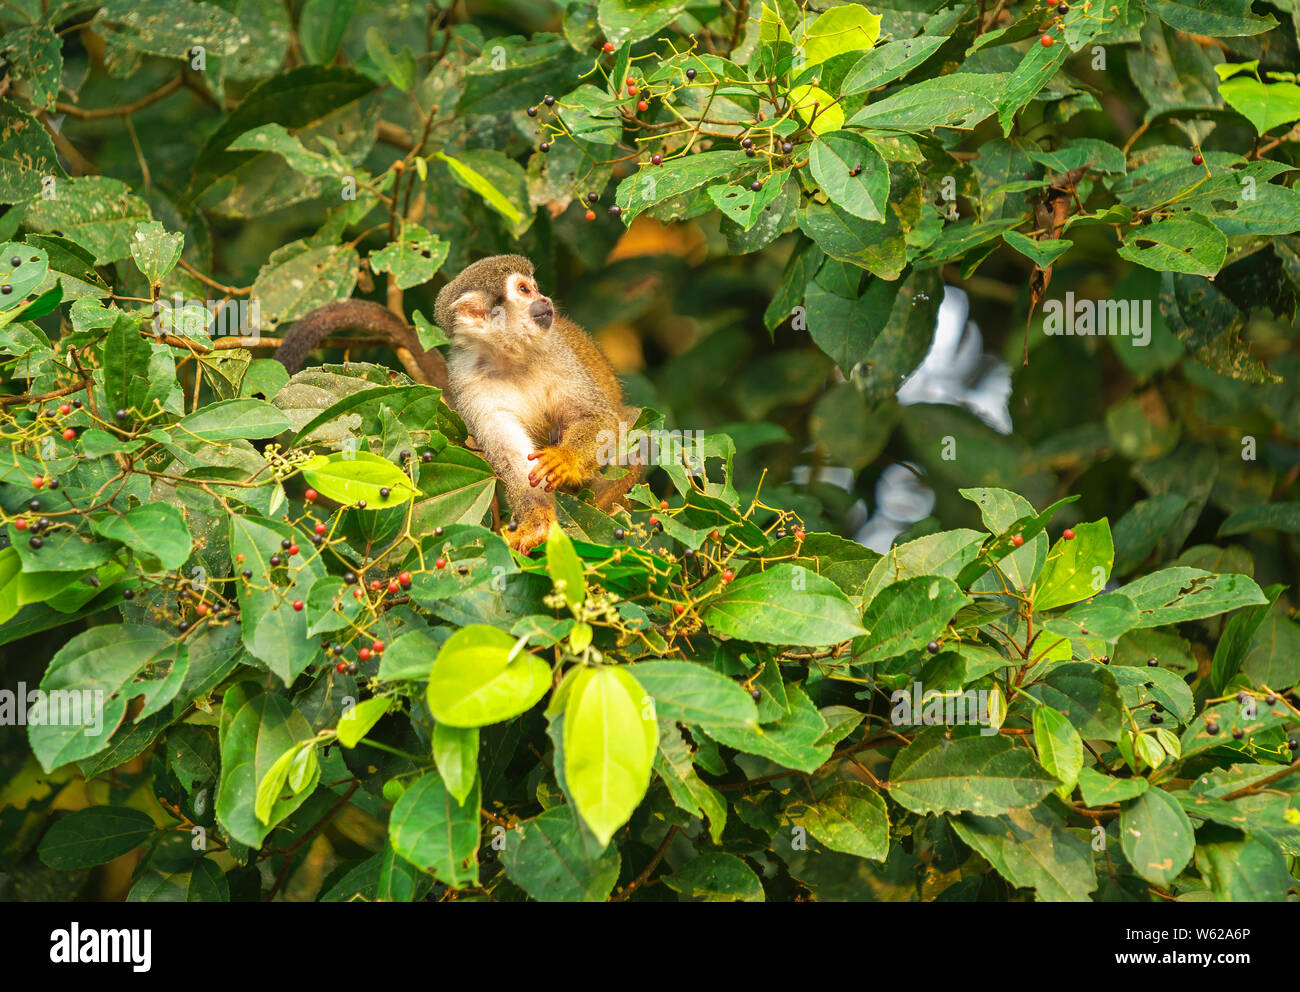 Una Scimmia di scoiattolo (Saimiri) mangiando frutti di bosco, Yasuni National Park, Ecuador. Essi si trovano nella foresta amazzonica e la giungla dell'America centrale. Foto Stock